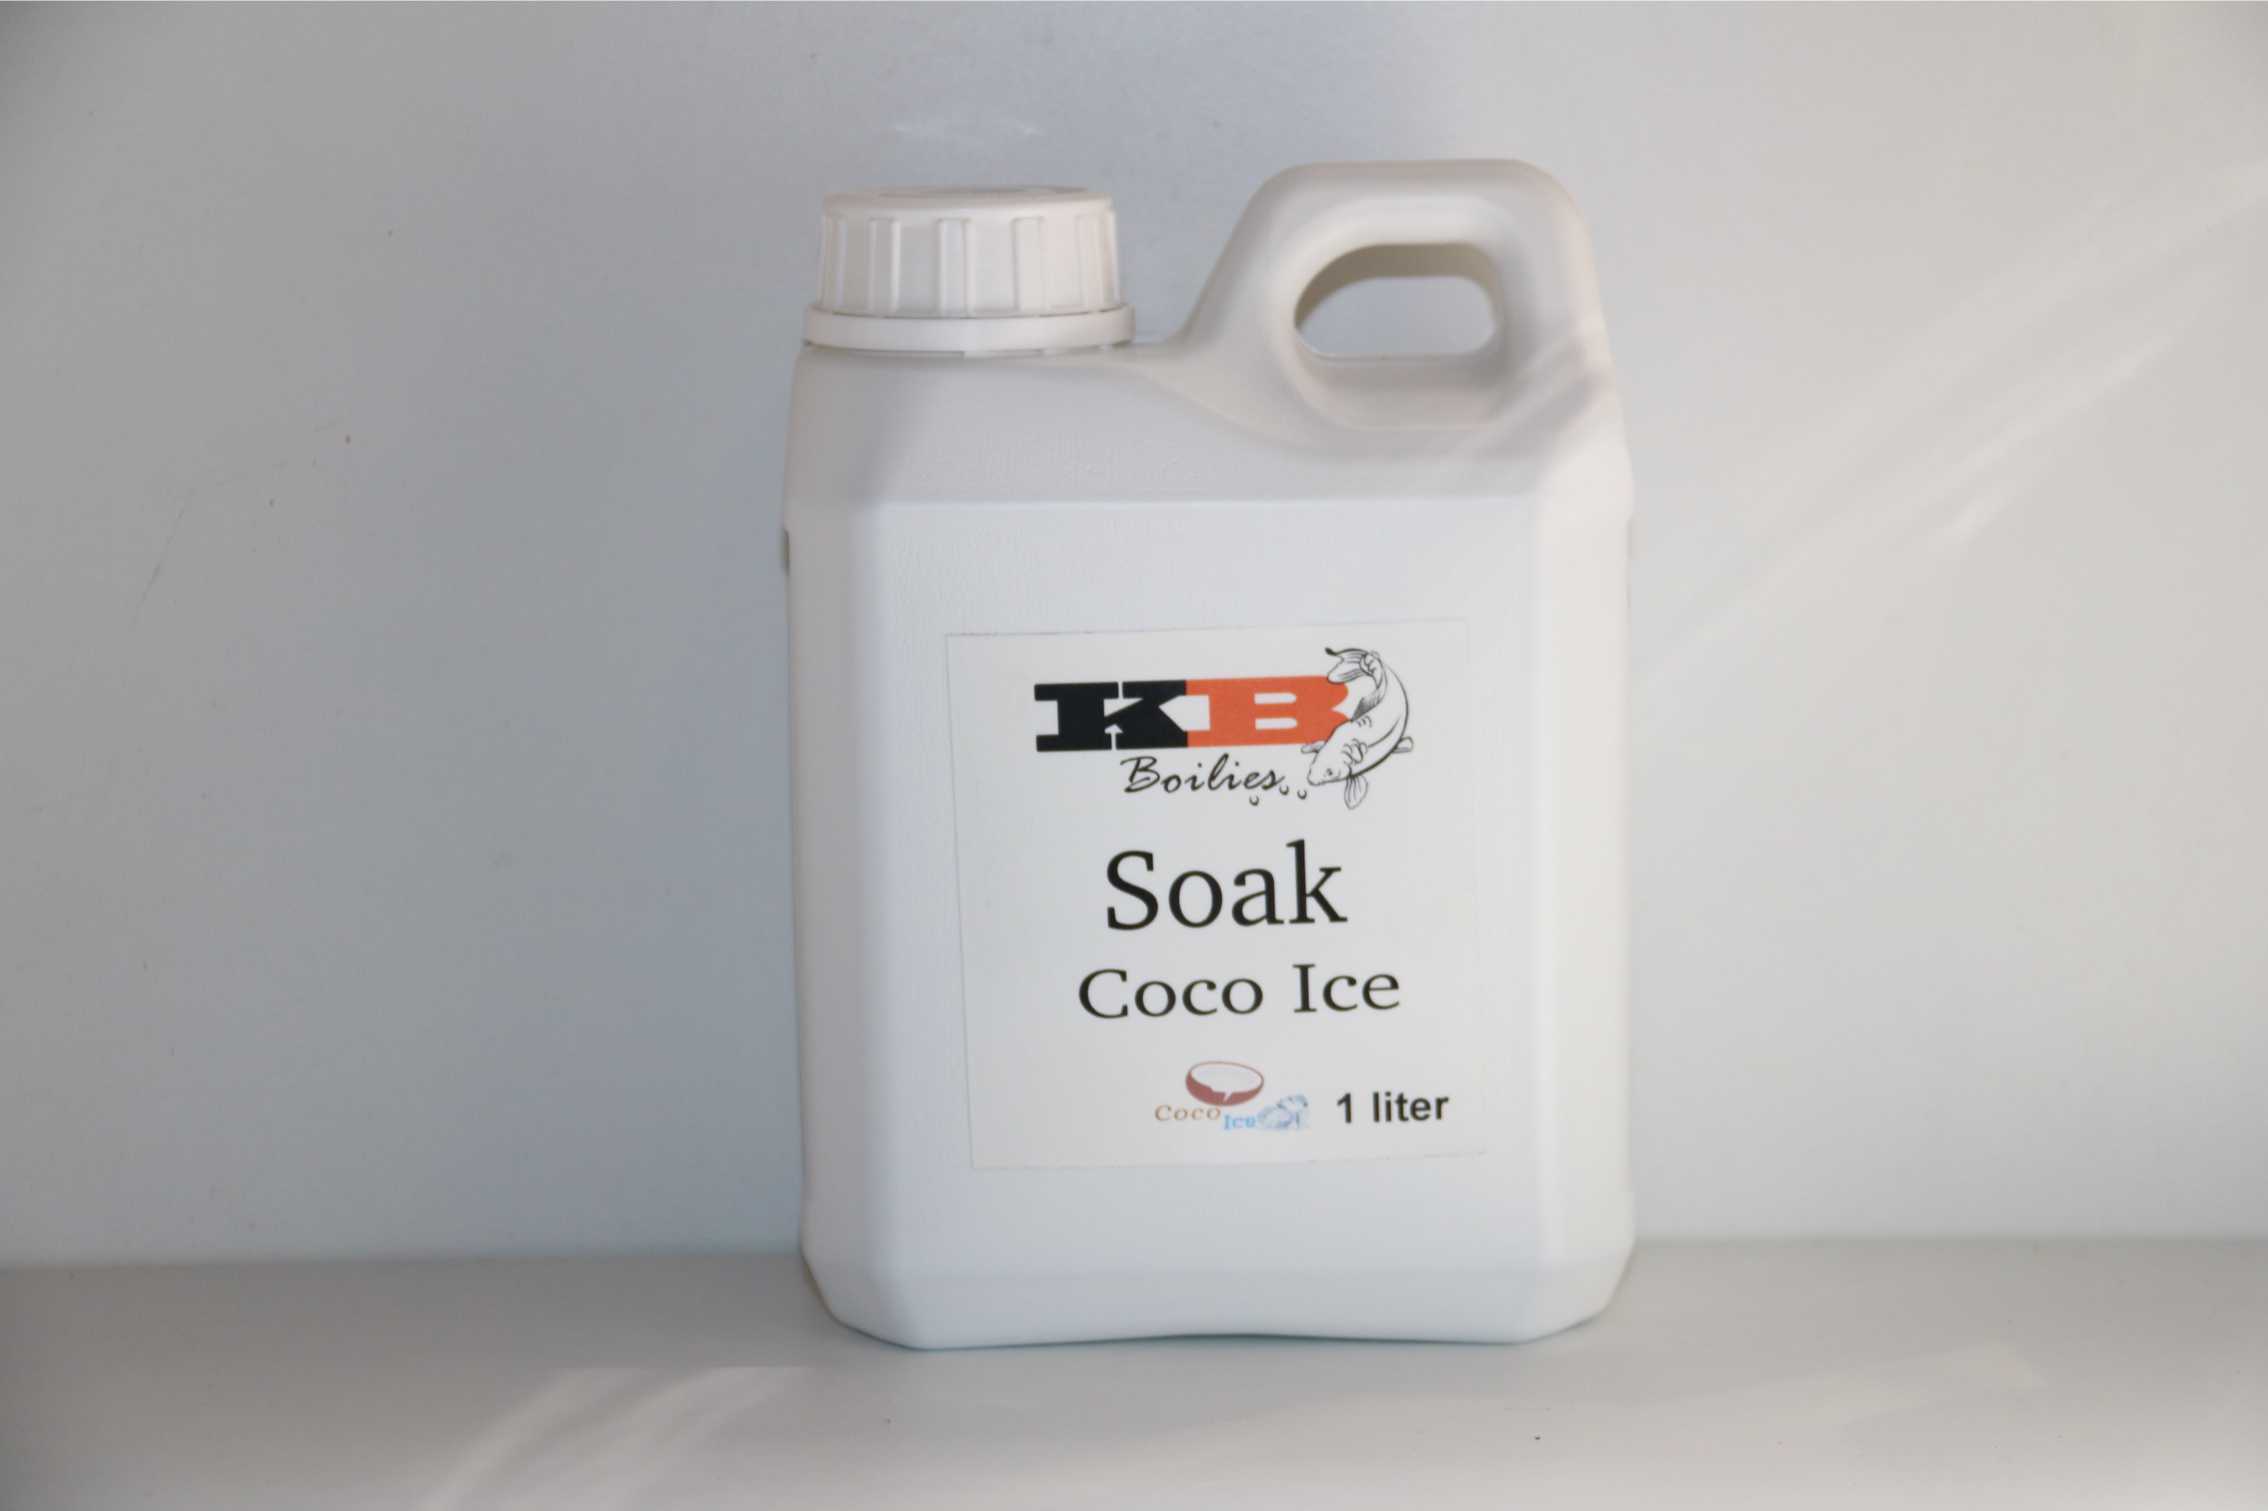 Soak Coco Ice